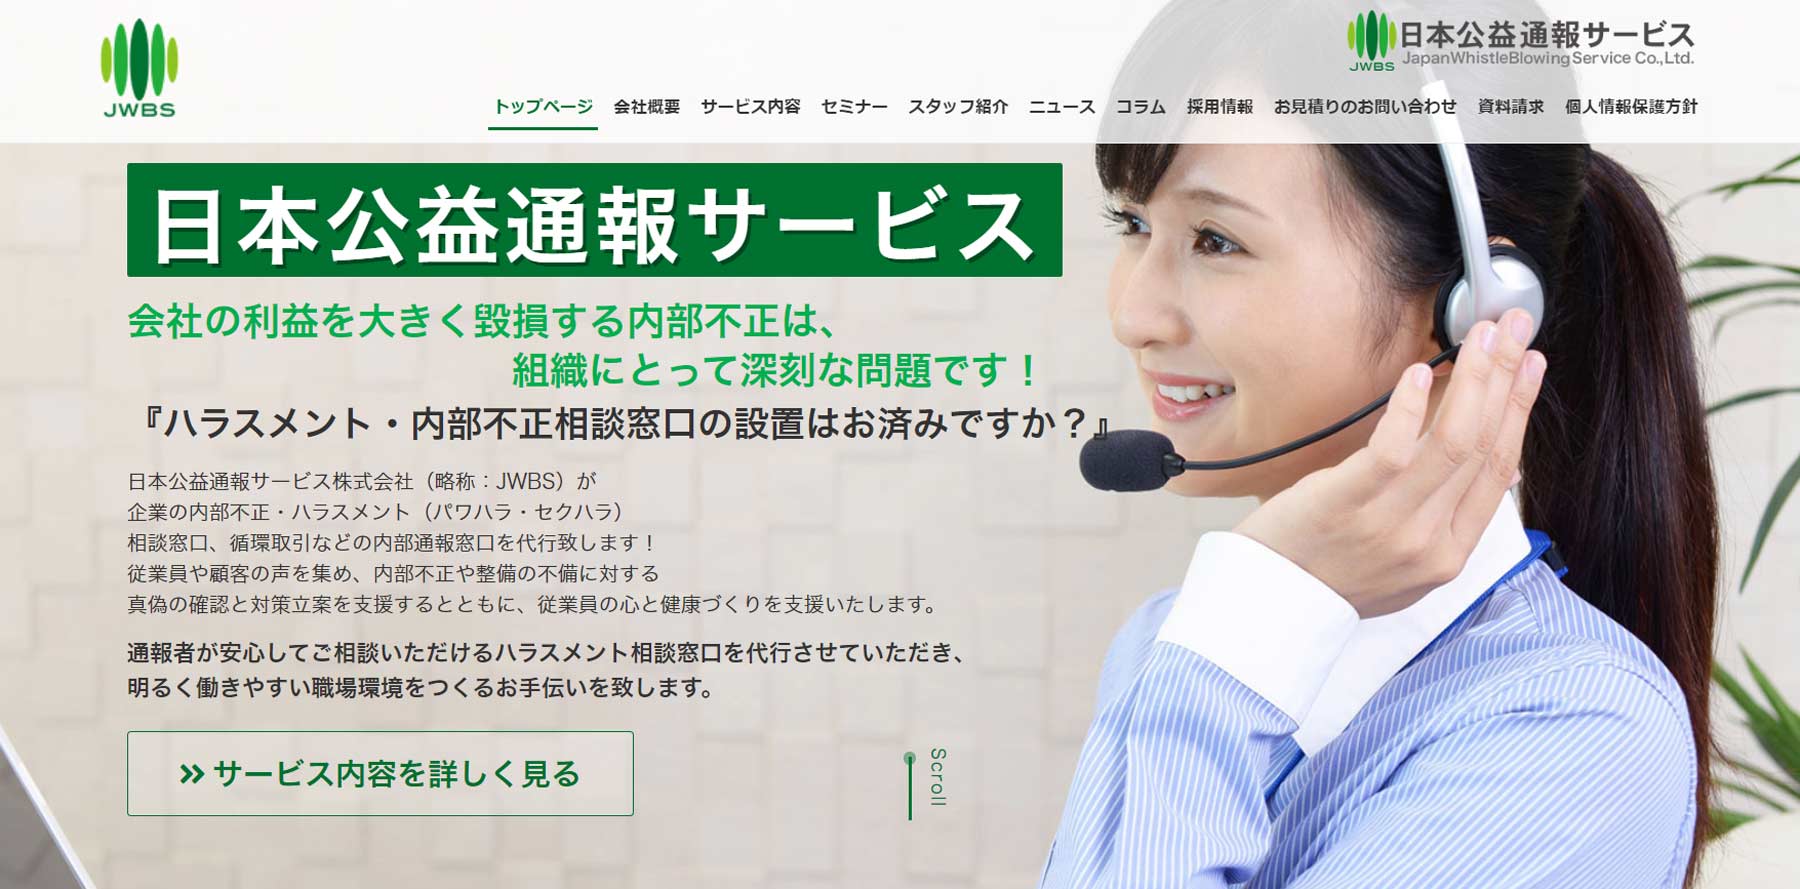 日本公益通報サービス公式Webサイト